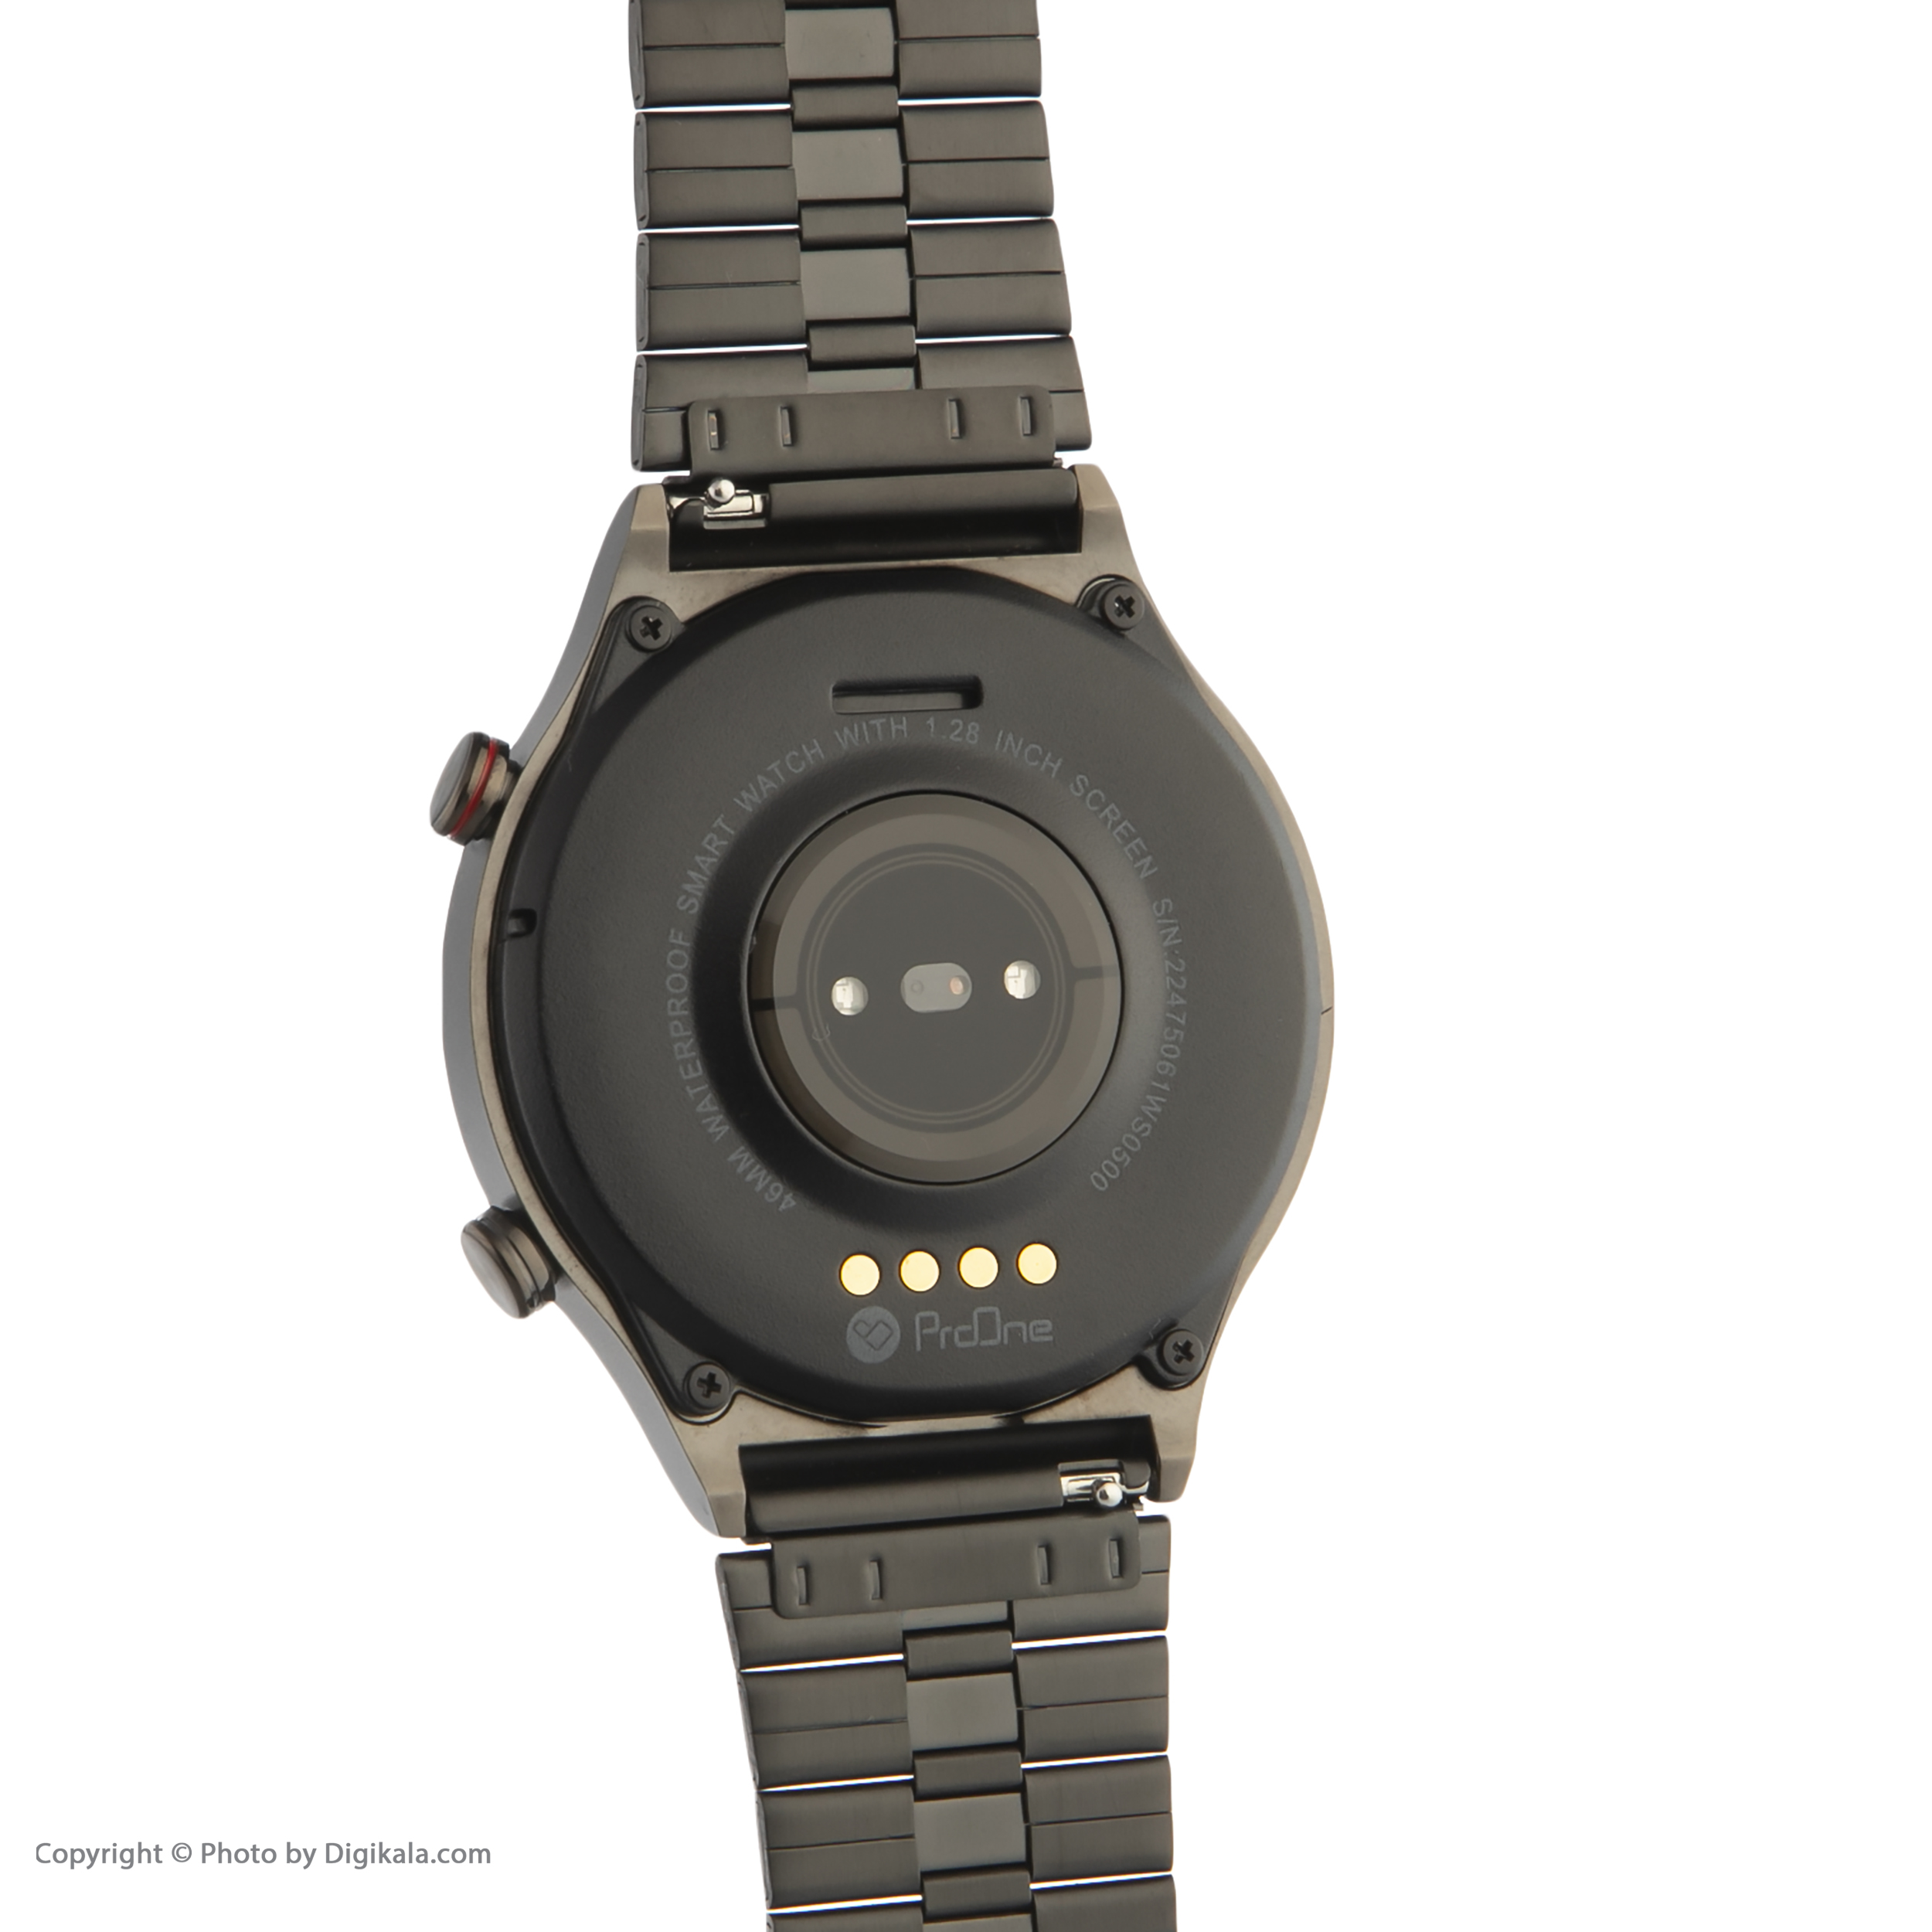 قیمت ساعت هوشمند پرووان مدل PWS05